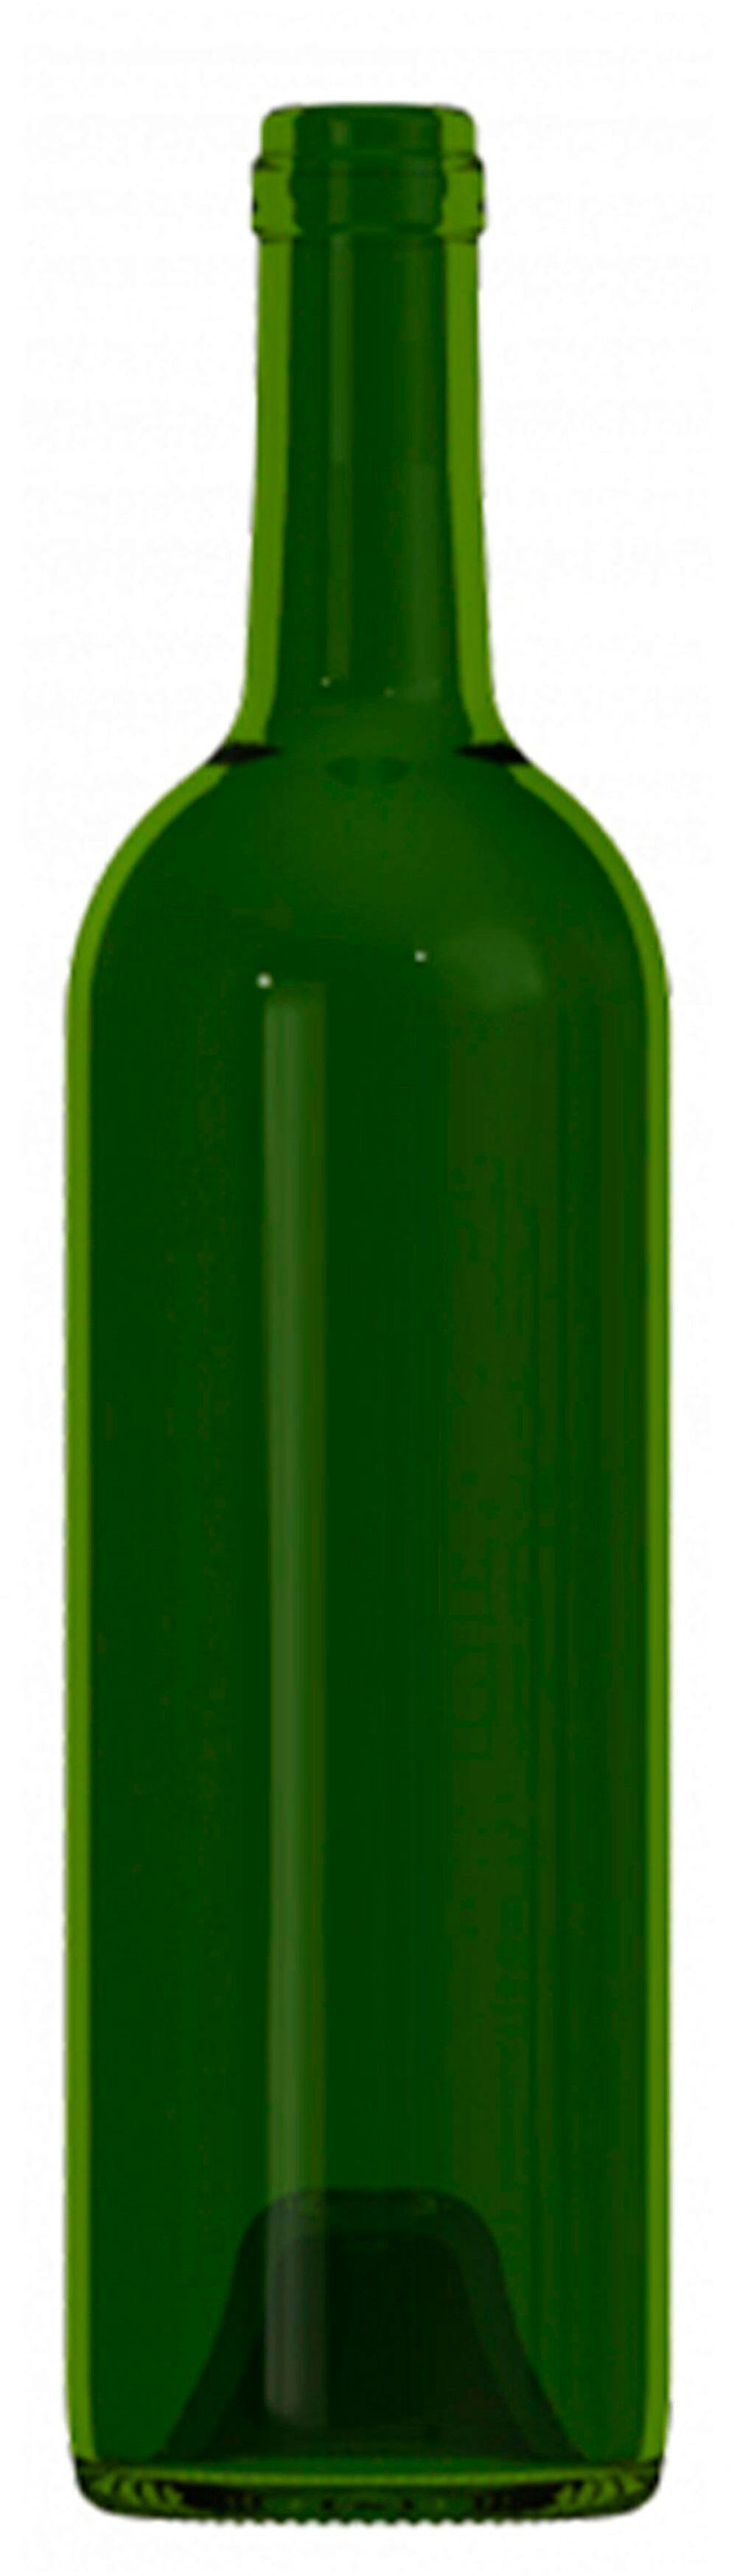 Bottle BORDOLESE  MED 750 ml BG-Cork